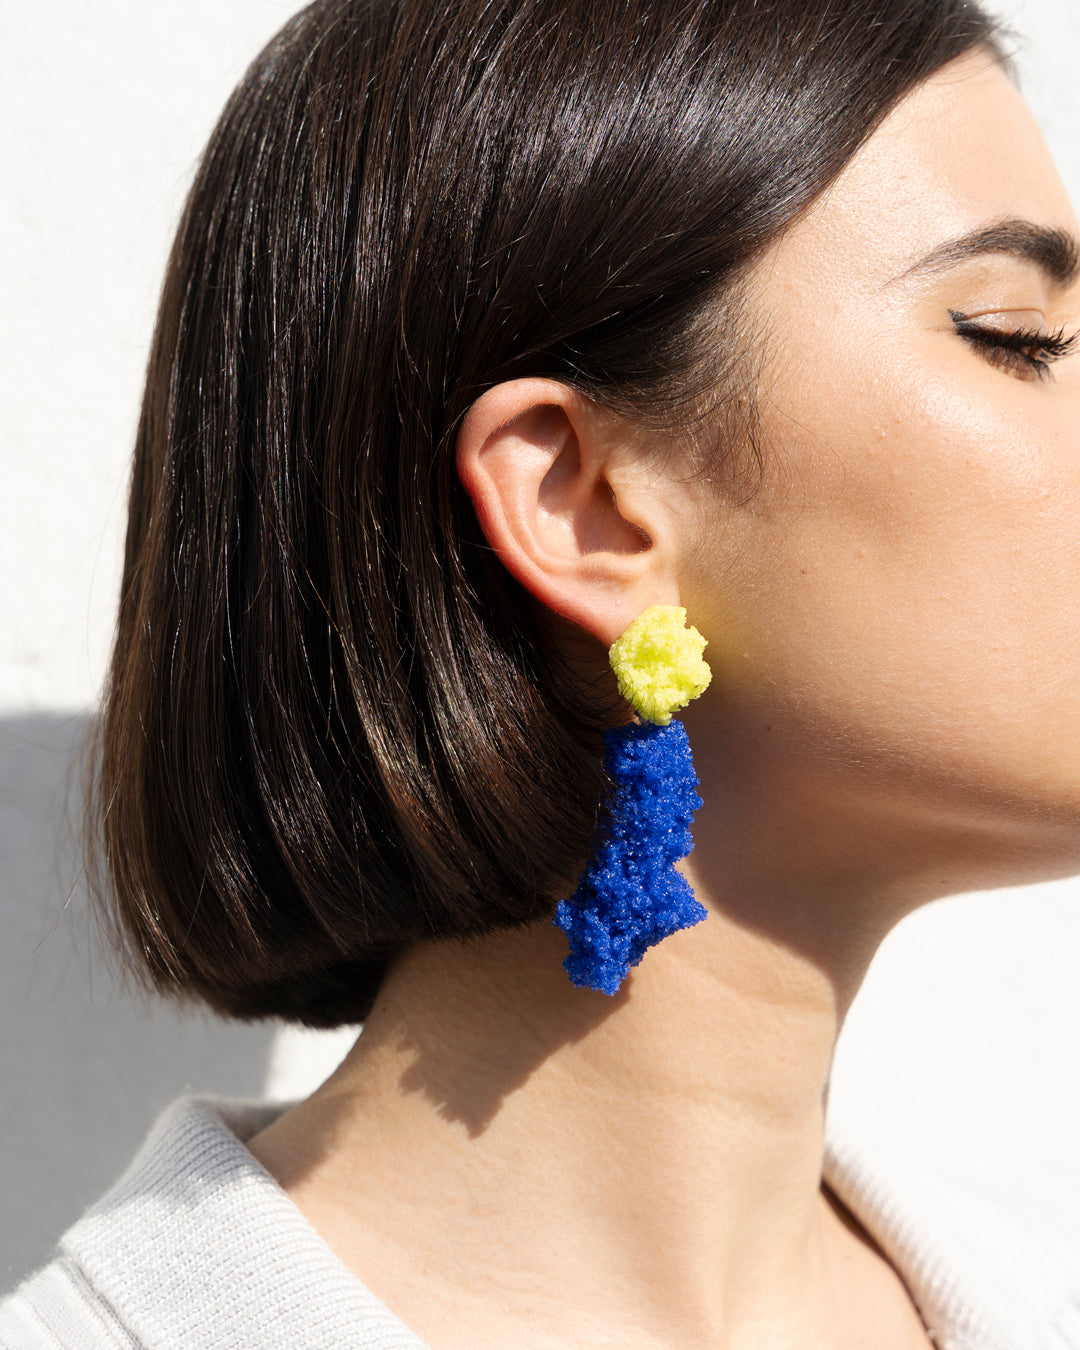 Double Sugar Earrings -  Lemon yellow and blue oxide